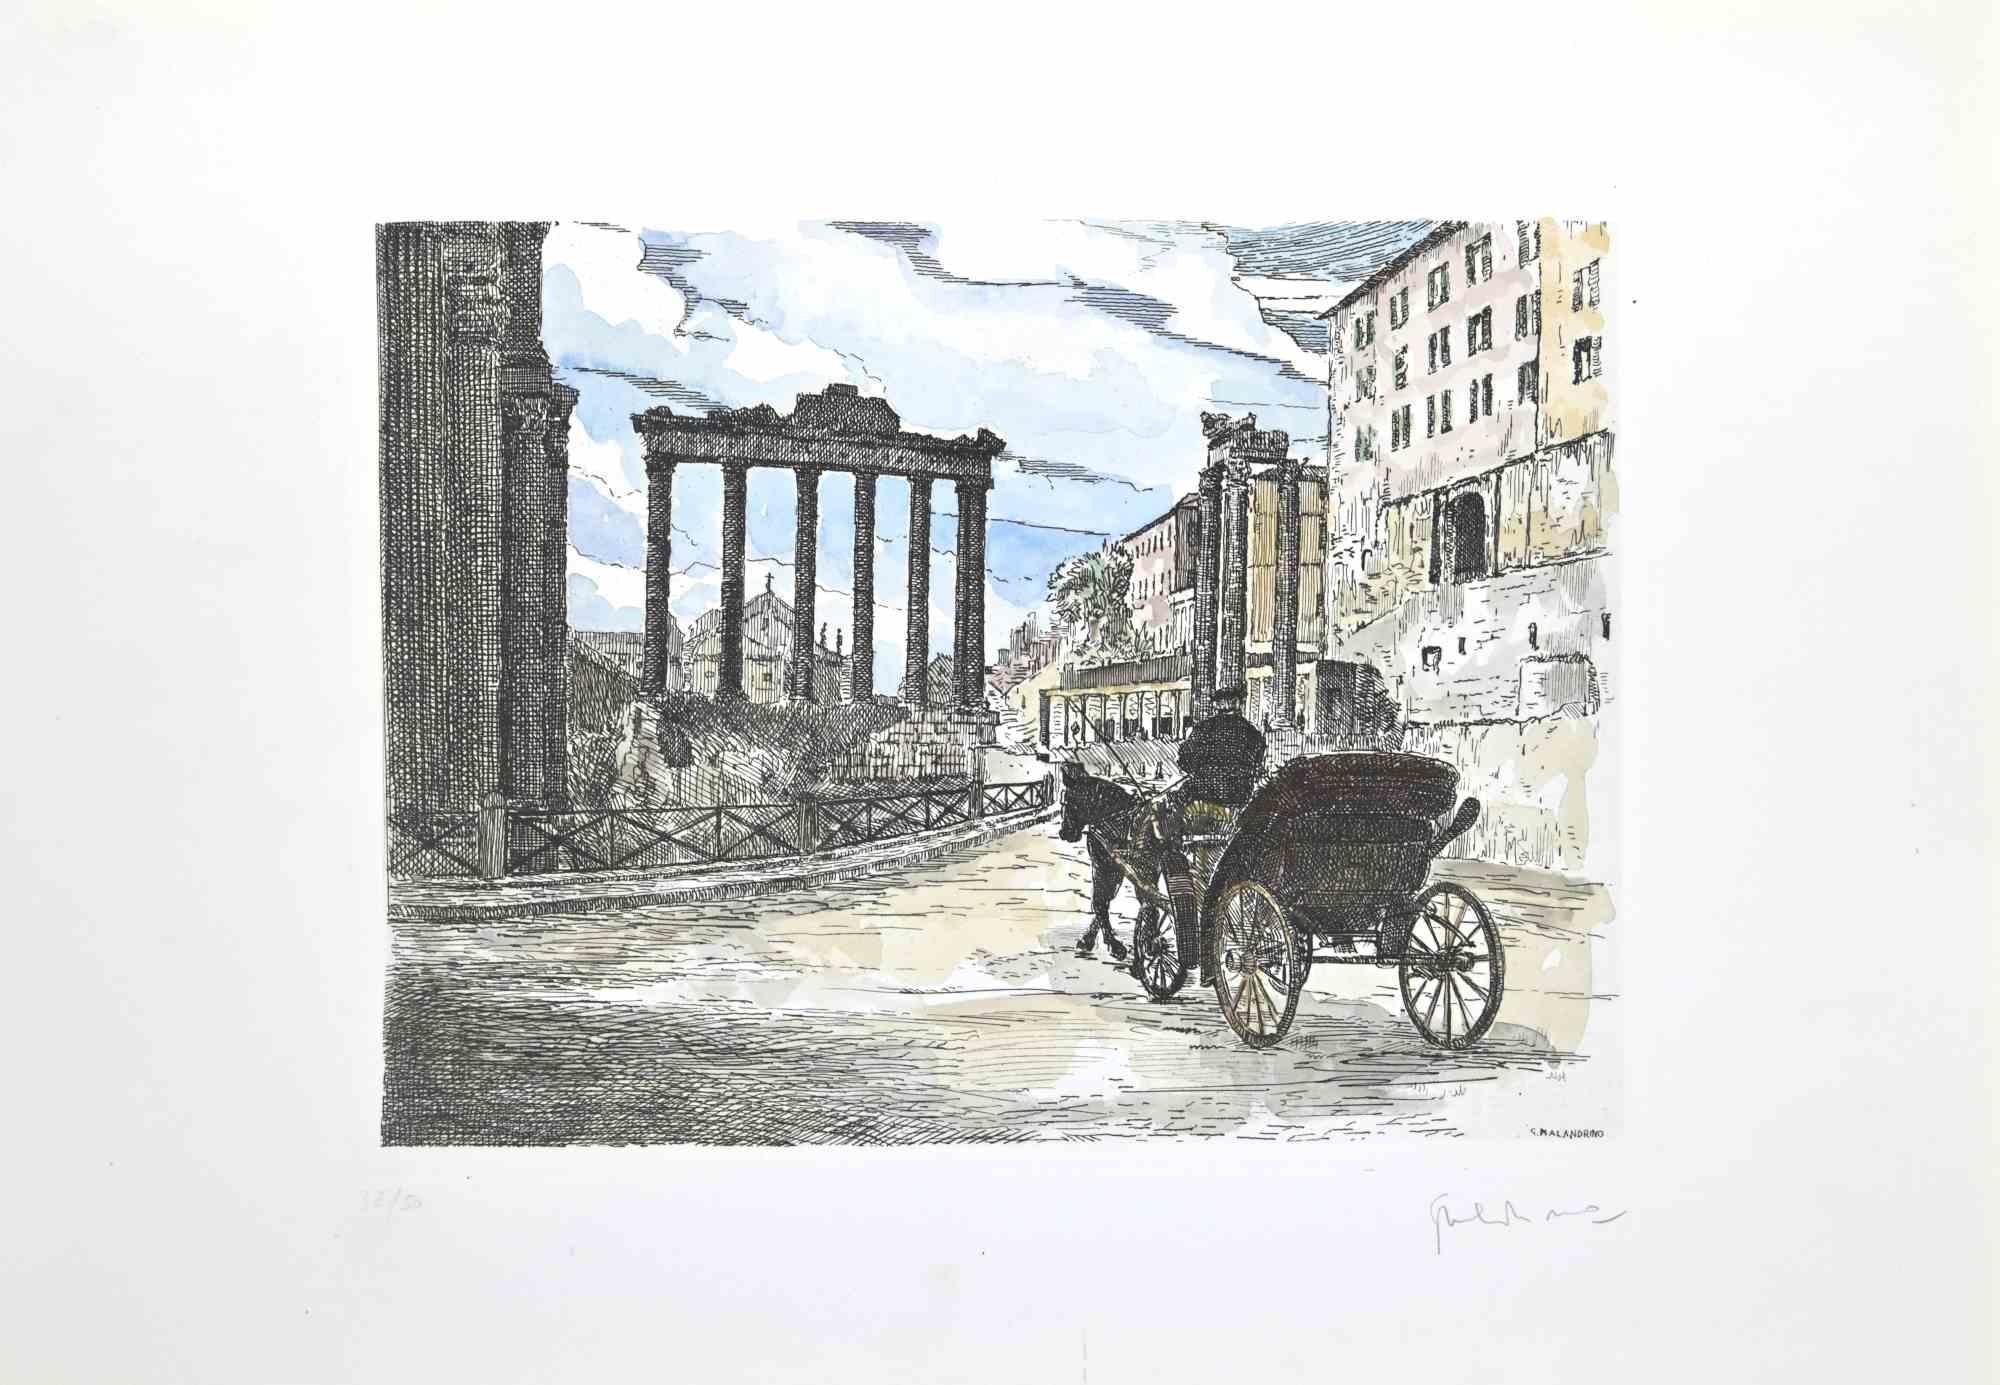 Roman Forum ist ein Kunstwerk, das von Giuseppe Malandrino realisiert wurde.

Originaldruck in Radiertechnik und von Hand aquarelliert.

Vom Künstler in der rechten unteren Ecke mit Bleistift handsigniert.

Nummerierte Auflage von 50